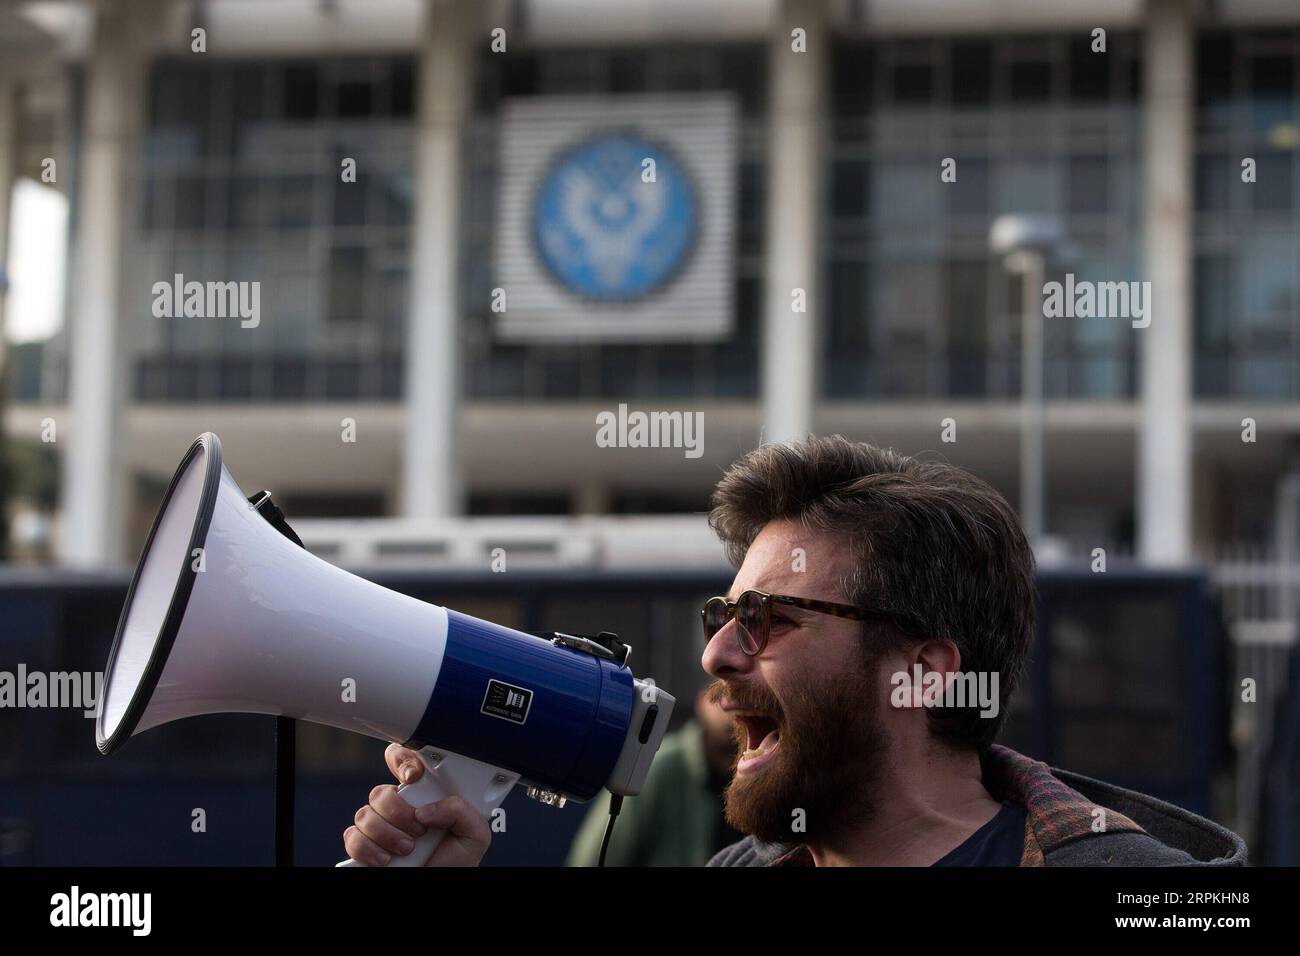 200111 -- ATHÈNES, le 11 janvier 2020 -- Un manifestant crie des slogans lors d'une manifestation à Athènes, en Grèce, le 11 janvier 2020. Des milliers de manifestants ont défilé samedi dans le centre d'Athènes et Thessalonique, dans le nord de la Grèce, scandant des slogans contre la frappe aérienne américaine en Irak qui a tué le major-général iranien Qassem Soleimani, a rapporté l'agence de presse nationale grecque AMNA. GRÈCE-ATHÈNES-MANIFESTATION CONTRE LA FRAPPE AÉRIENNE AMÉRICAINE MARIOSXLOLOS PUBLICATIONXNOTXINXCHN Banque D'Images